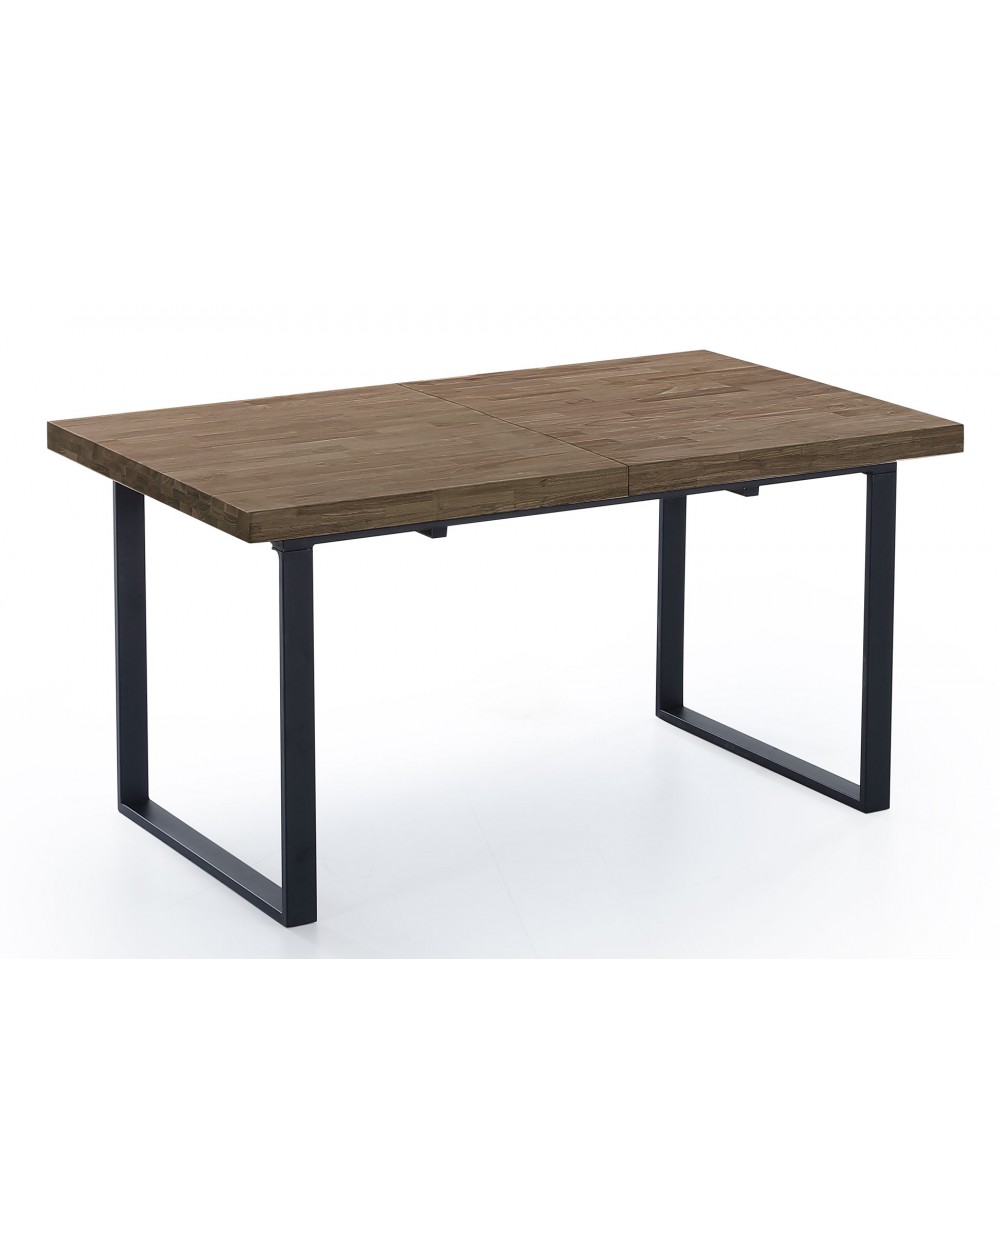 Mesa de comedor con patas extensibles modelo Stripe, de gran superficie  útil y muy resistente.